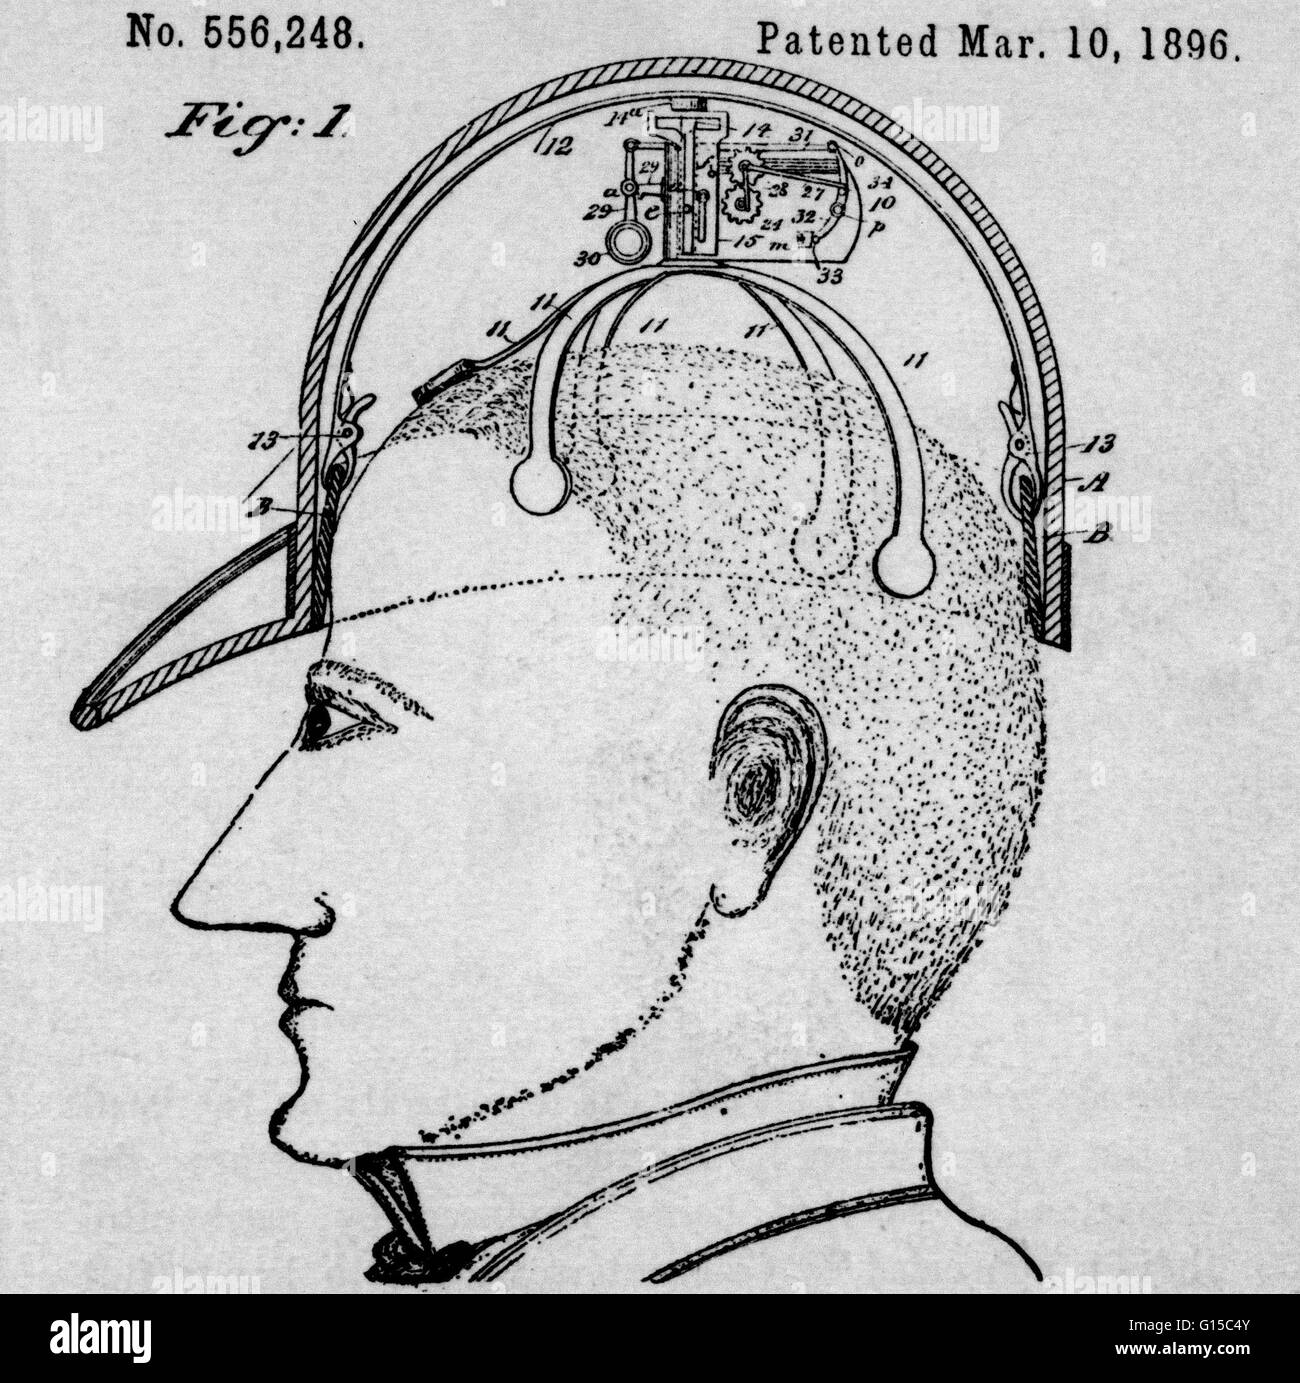 Diagramm eines grüßte Geräts, die von James C. Boyle am 10. März 1896 patentiert wurde. Das Gerät soll "automatisch Effekt höflichen anreden," oder Kipp-Hut, ohne den Einsatz von Händen. Patent Nr. 556.248. Stockfoto